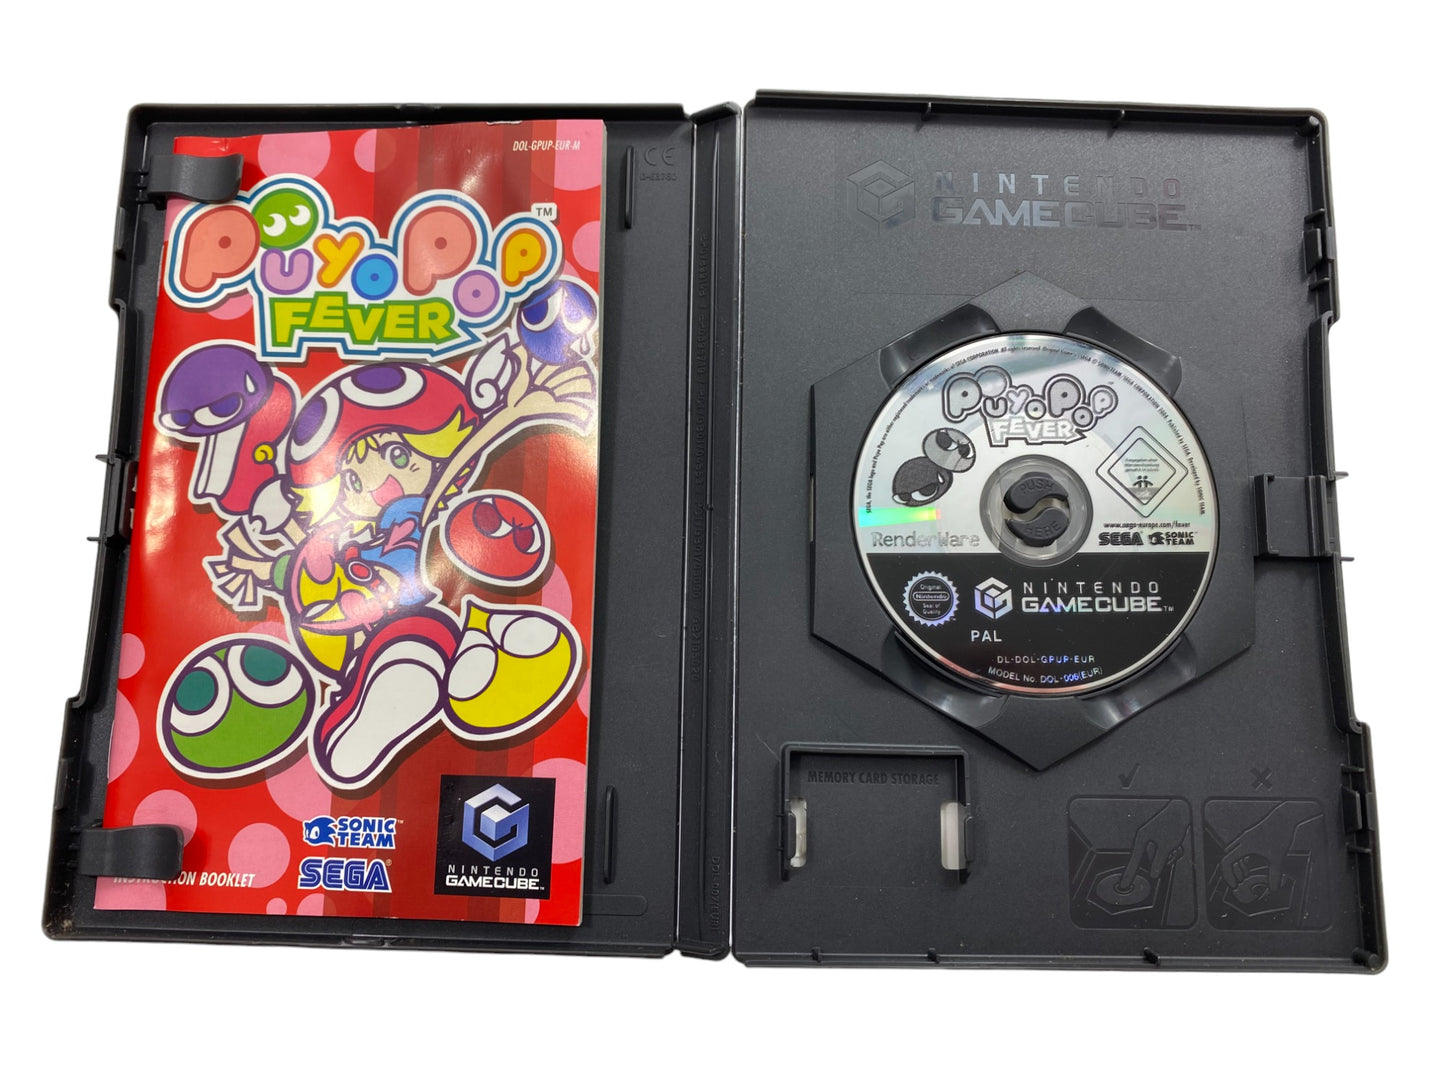 Puyo Pop Fever - Nintendo GameCube